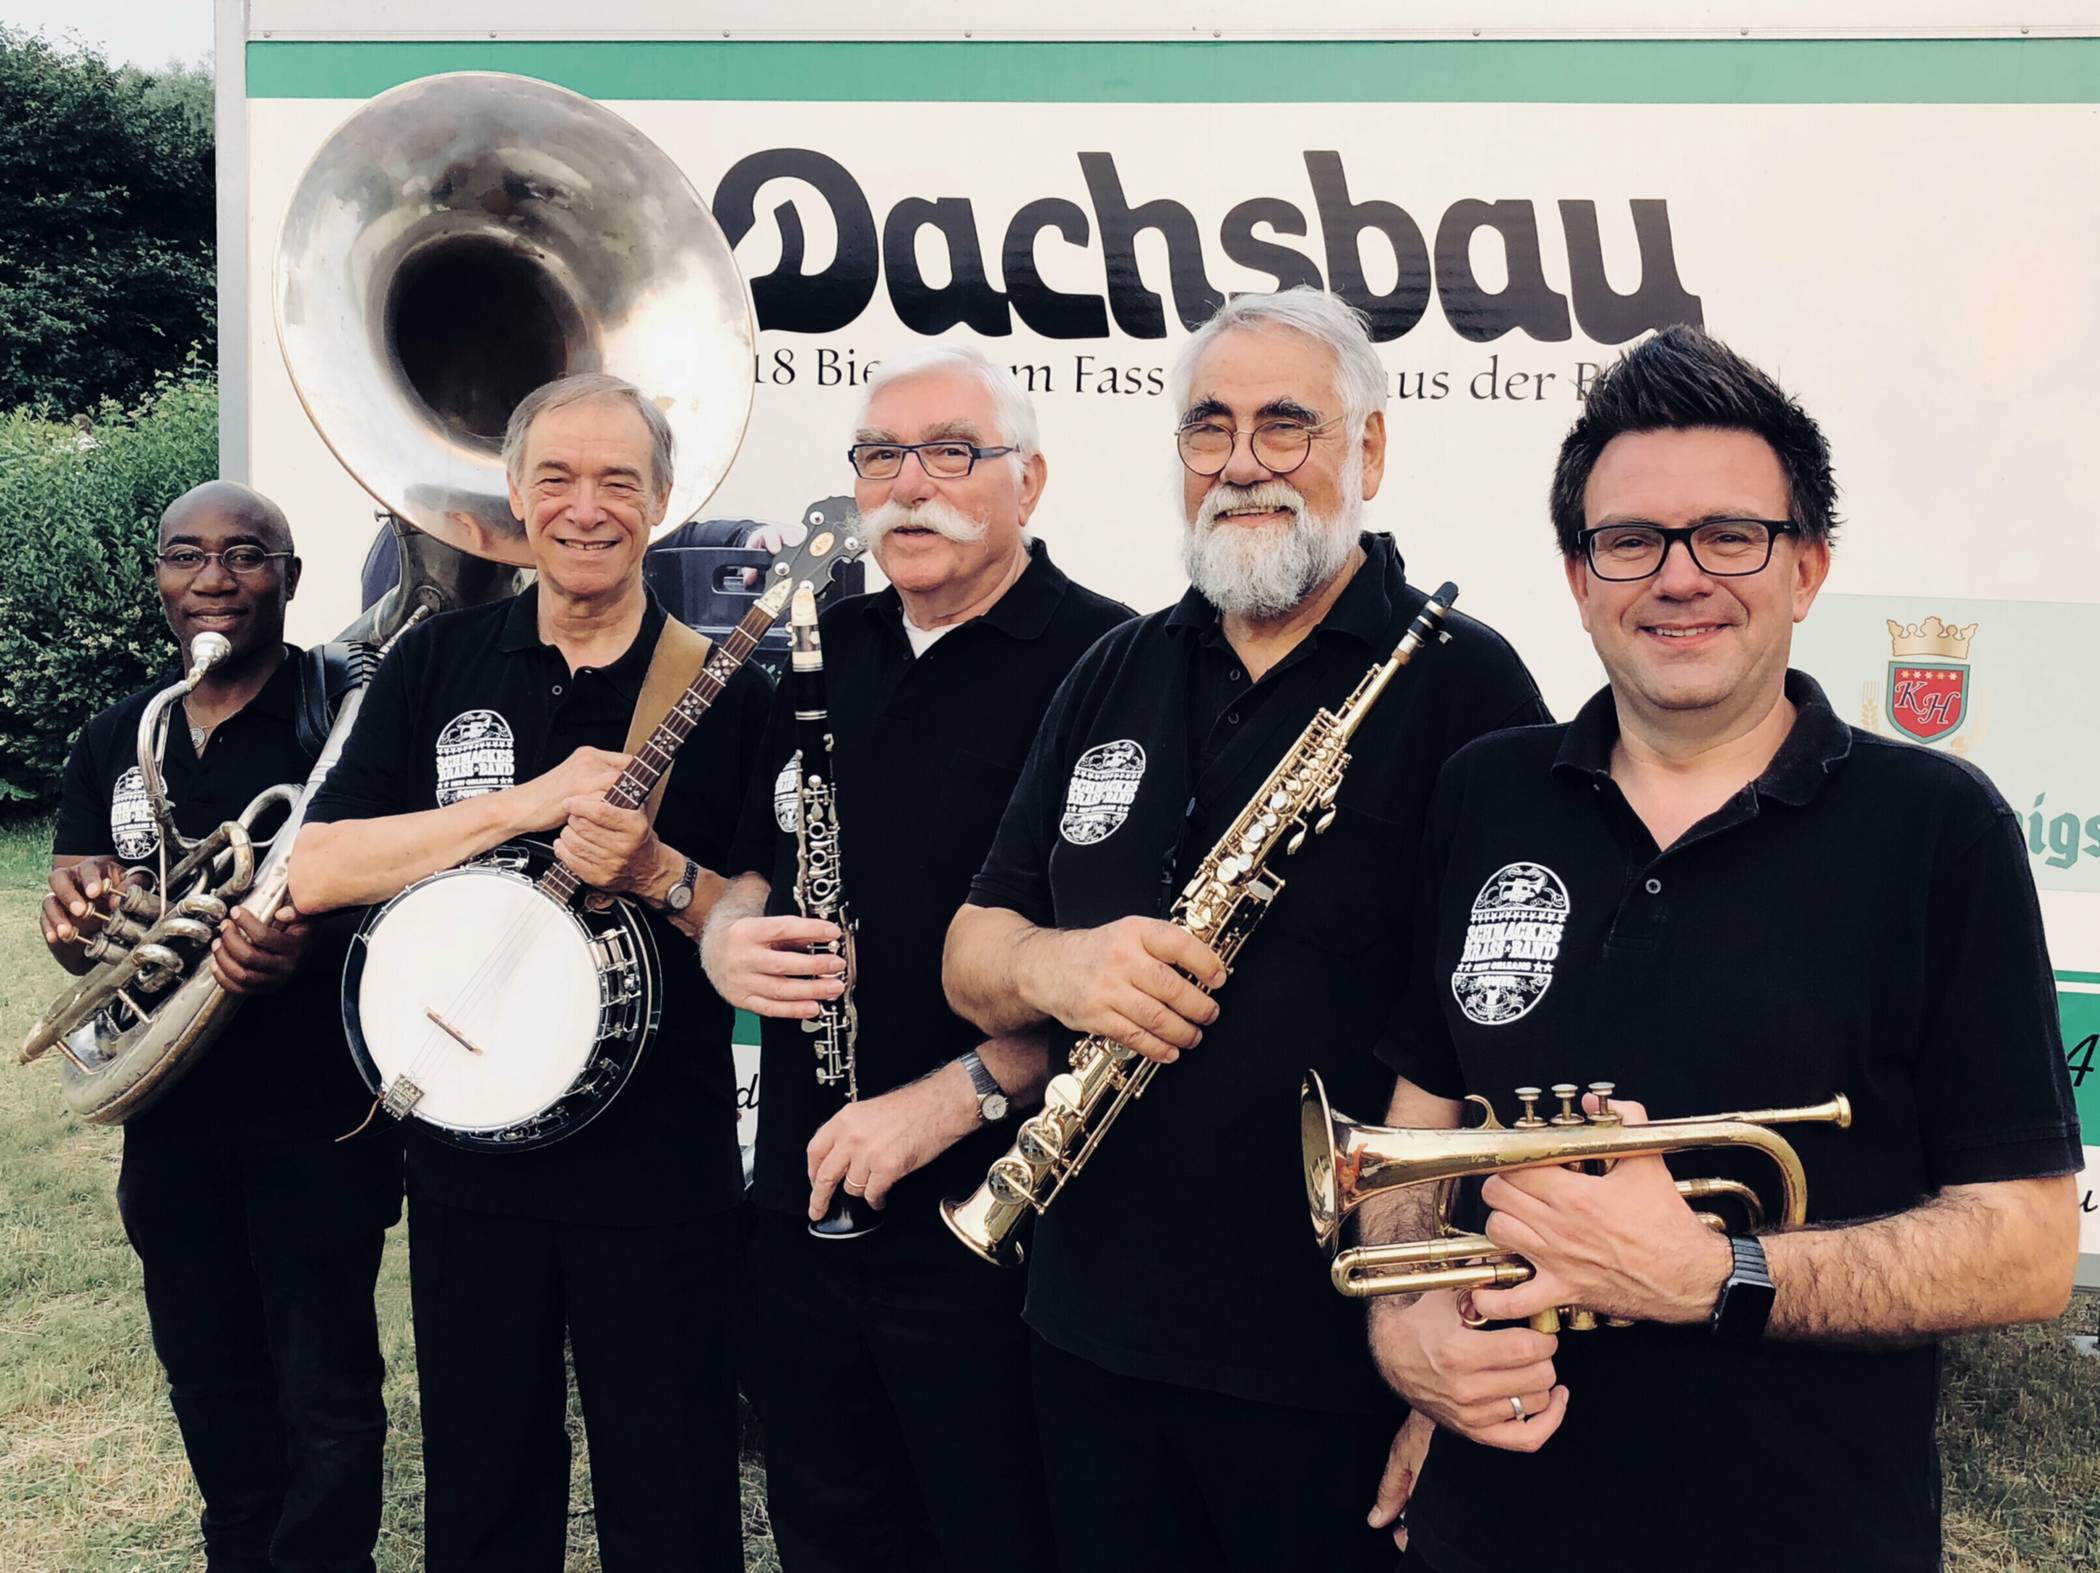  Sorgen stets für Stimmung: Die beliebte Schmackes Brass Band unterhält auf Einladung der Werbegemeinschaft am Sonntag, 7. Januar, in der Krefelder Innenstadt die Besucher.  